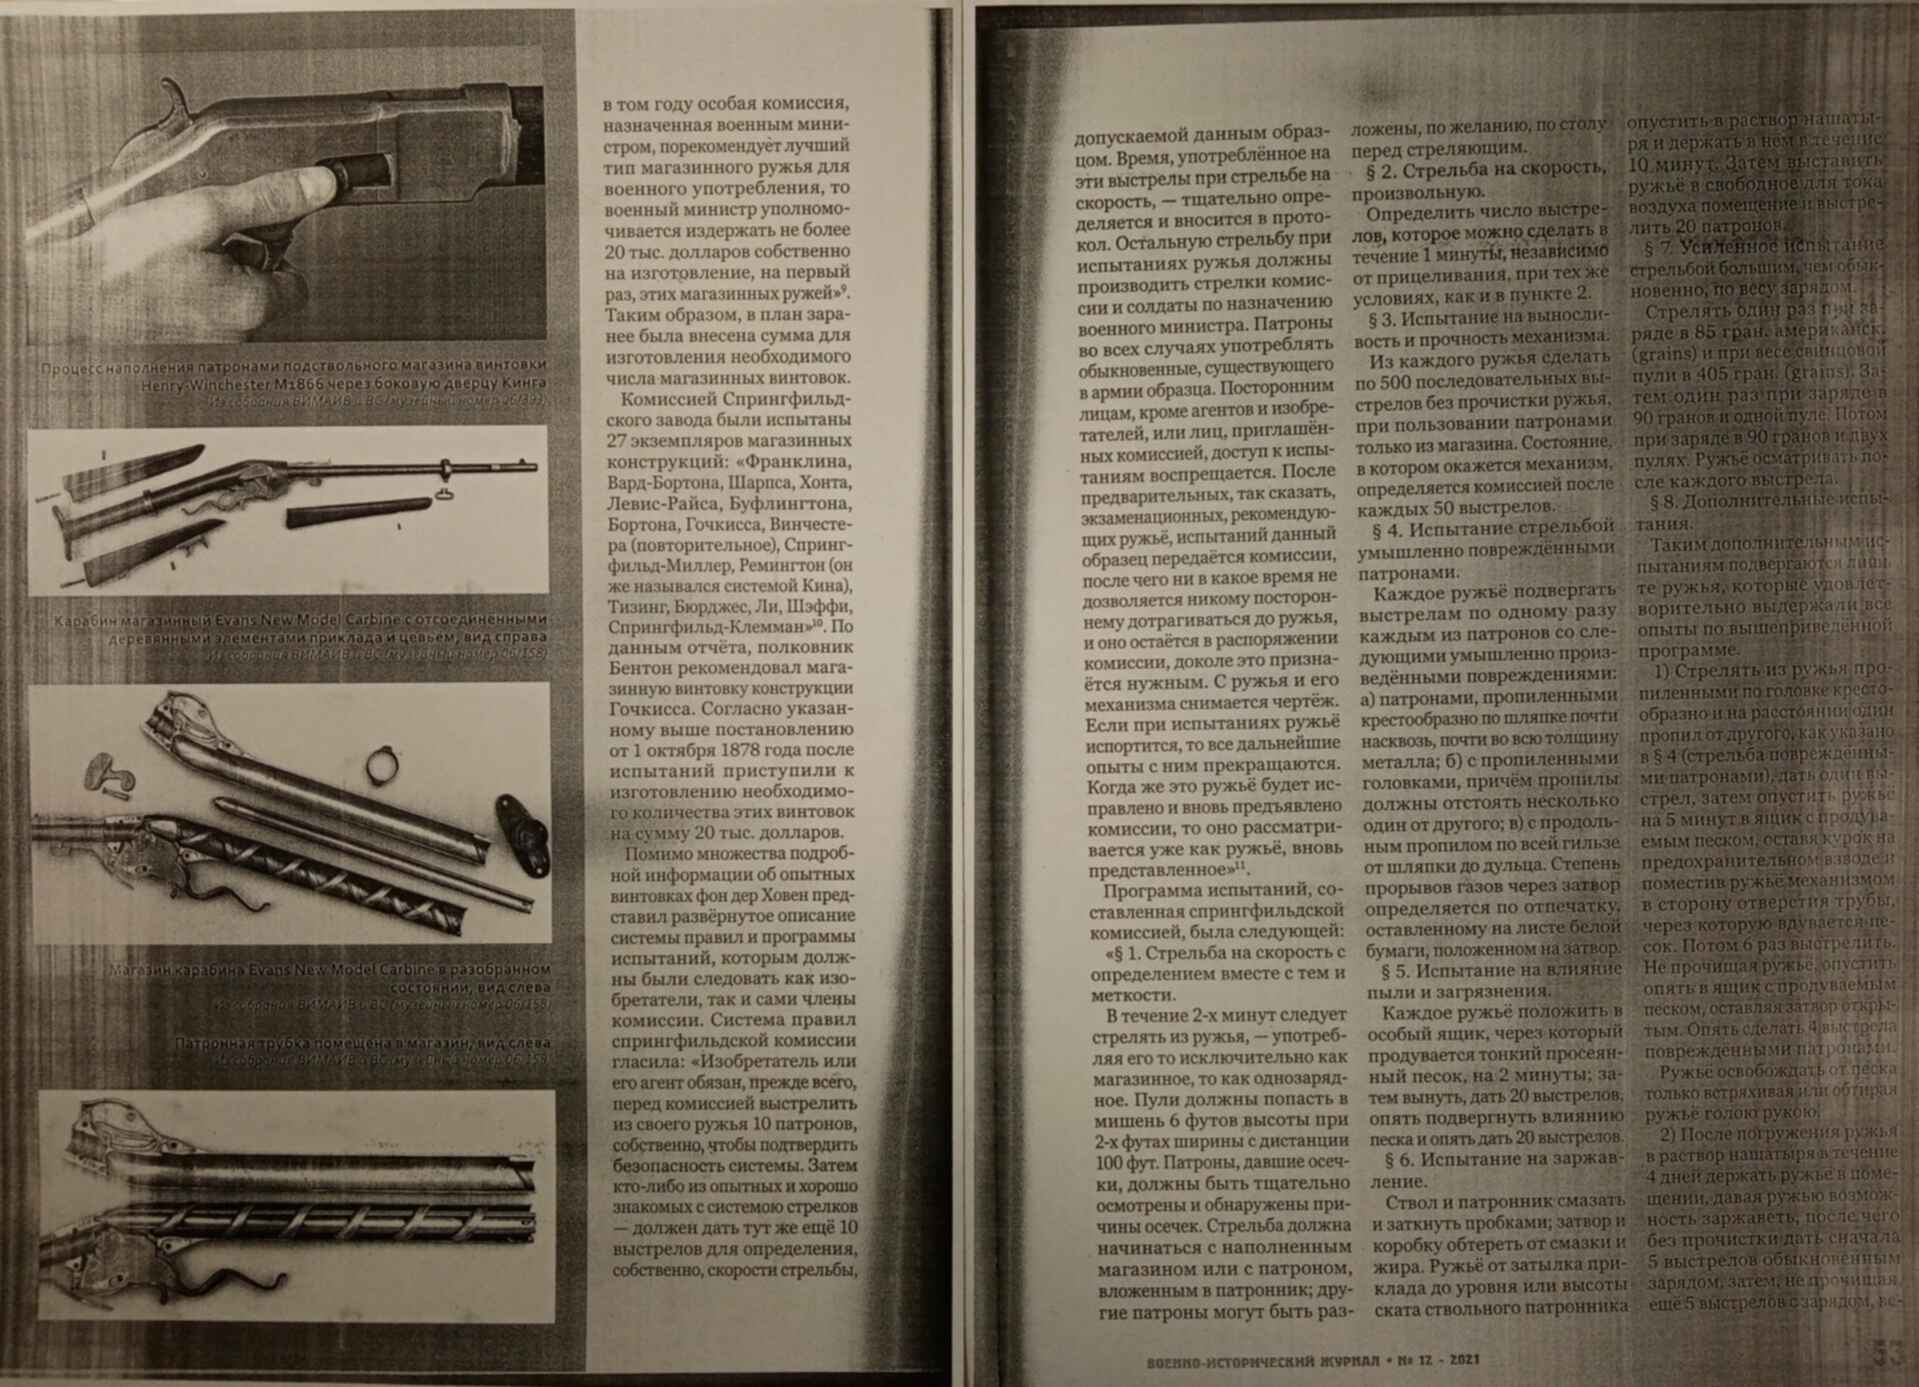 Оружие история война телеграмм фото 84